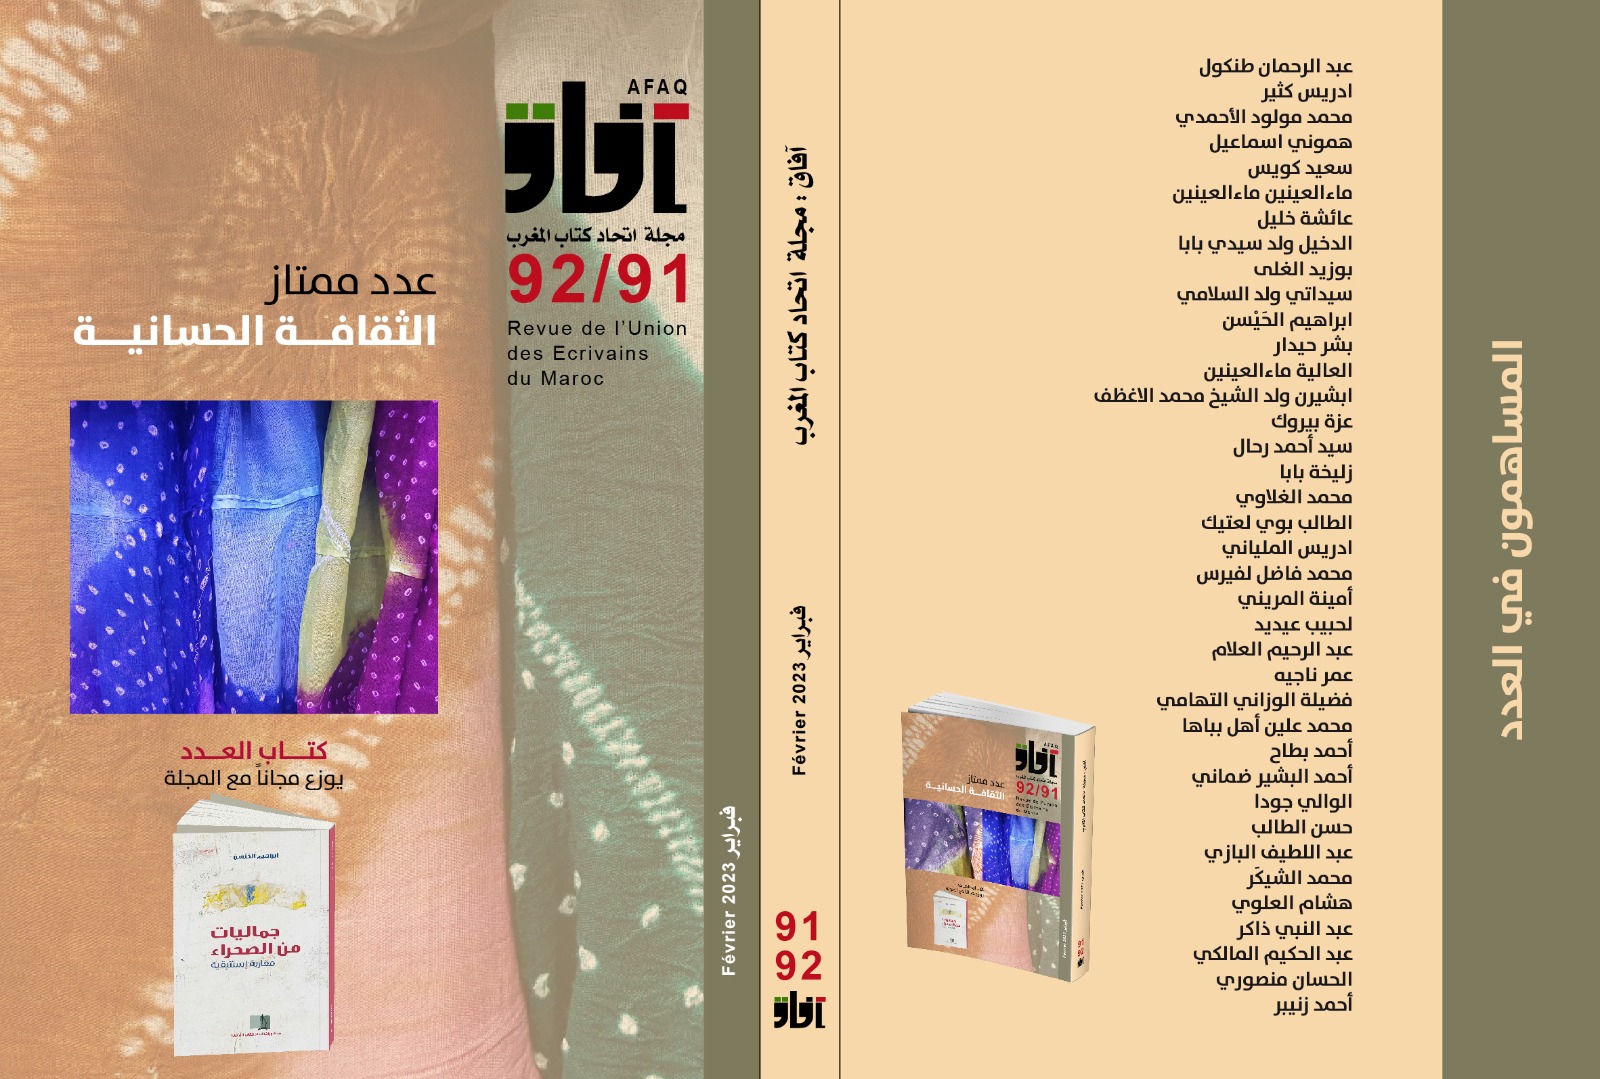 اتحاد كتاب المغرب يحتفي بصدور عدد جديد من مجلته “آفاق” وكتابها “جماليات من الصحراء: مقاربة استتيقية”